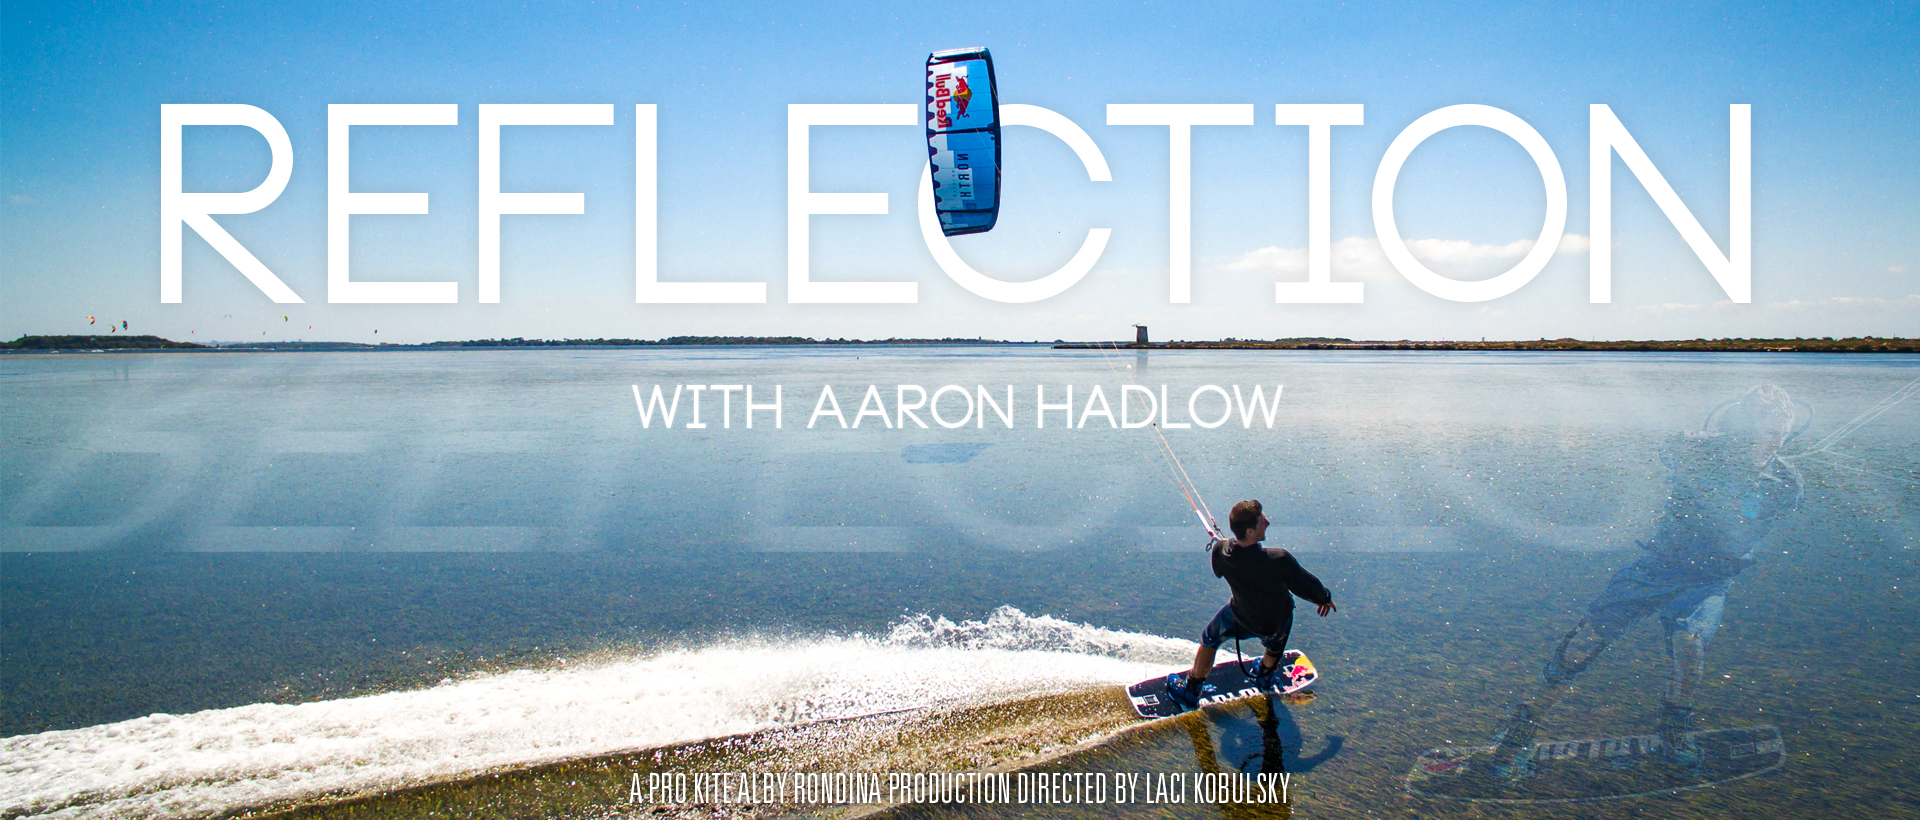 reflection2 - REFLECTION with Aaron Hadlow